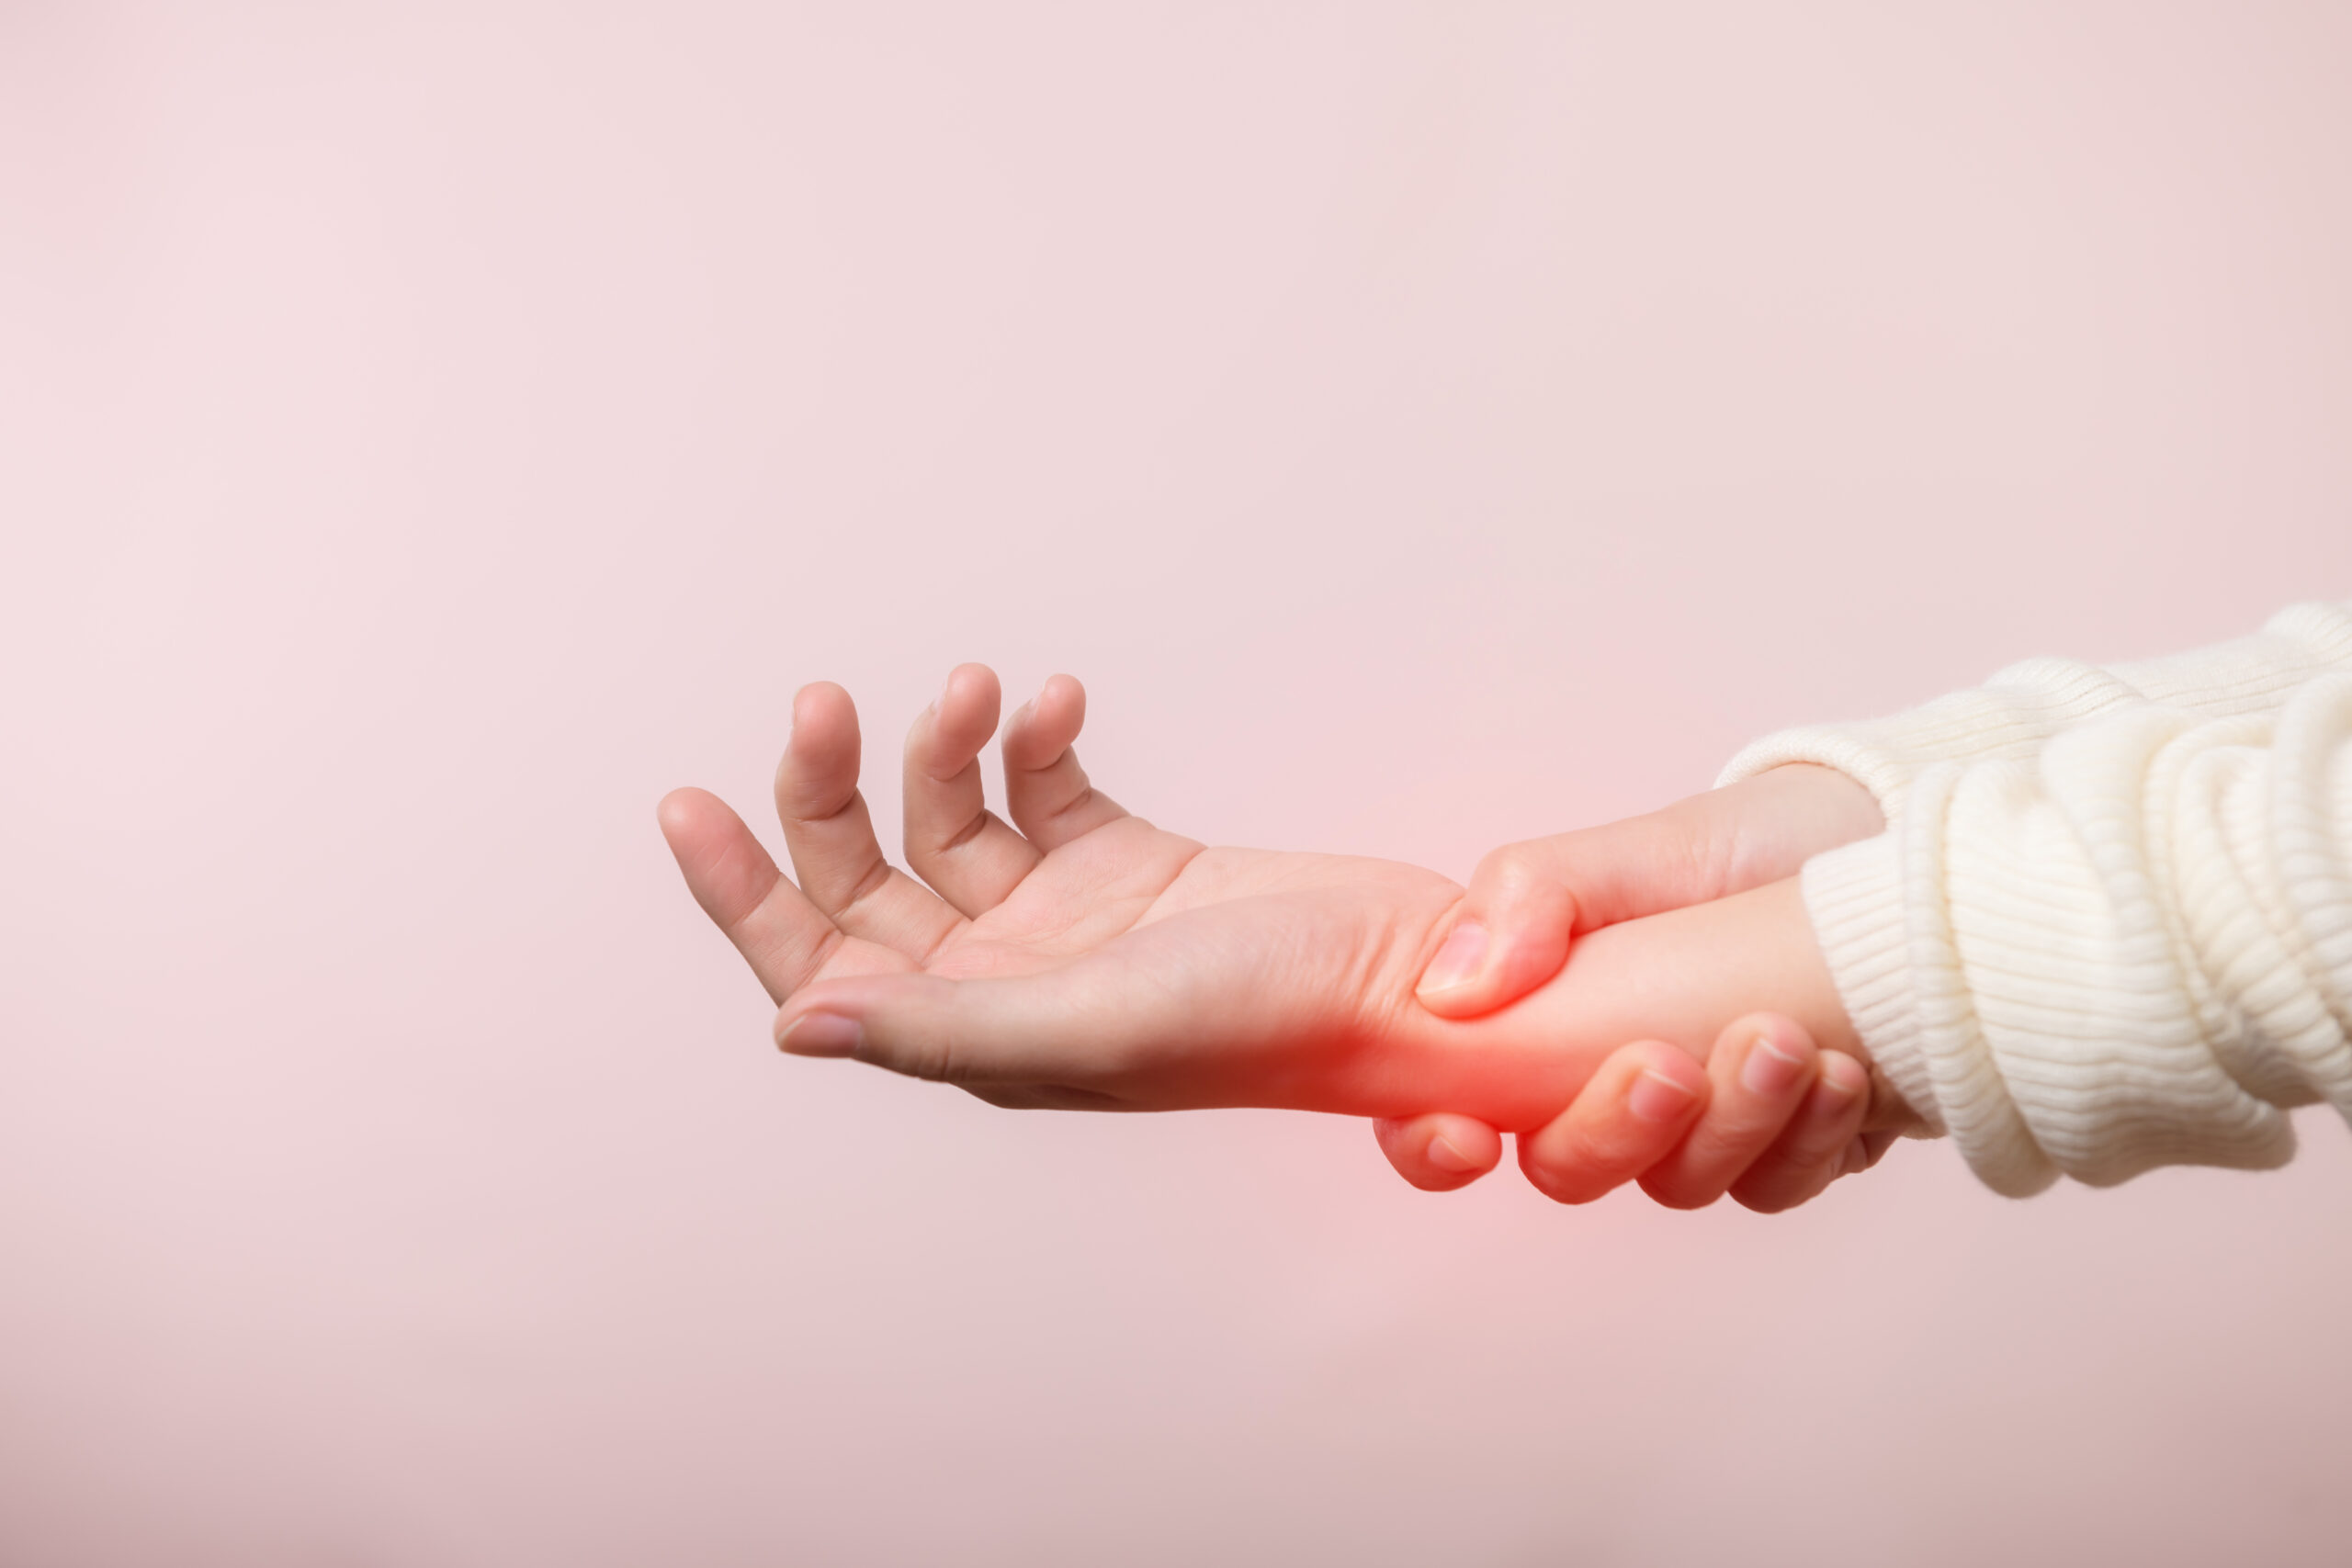 Grafika ilustrująca promieniujący ból ze stłuczonej ręki kobiety, która się za nią trzyma